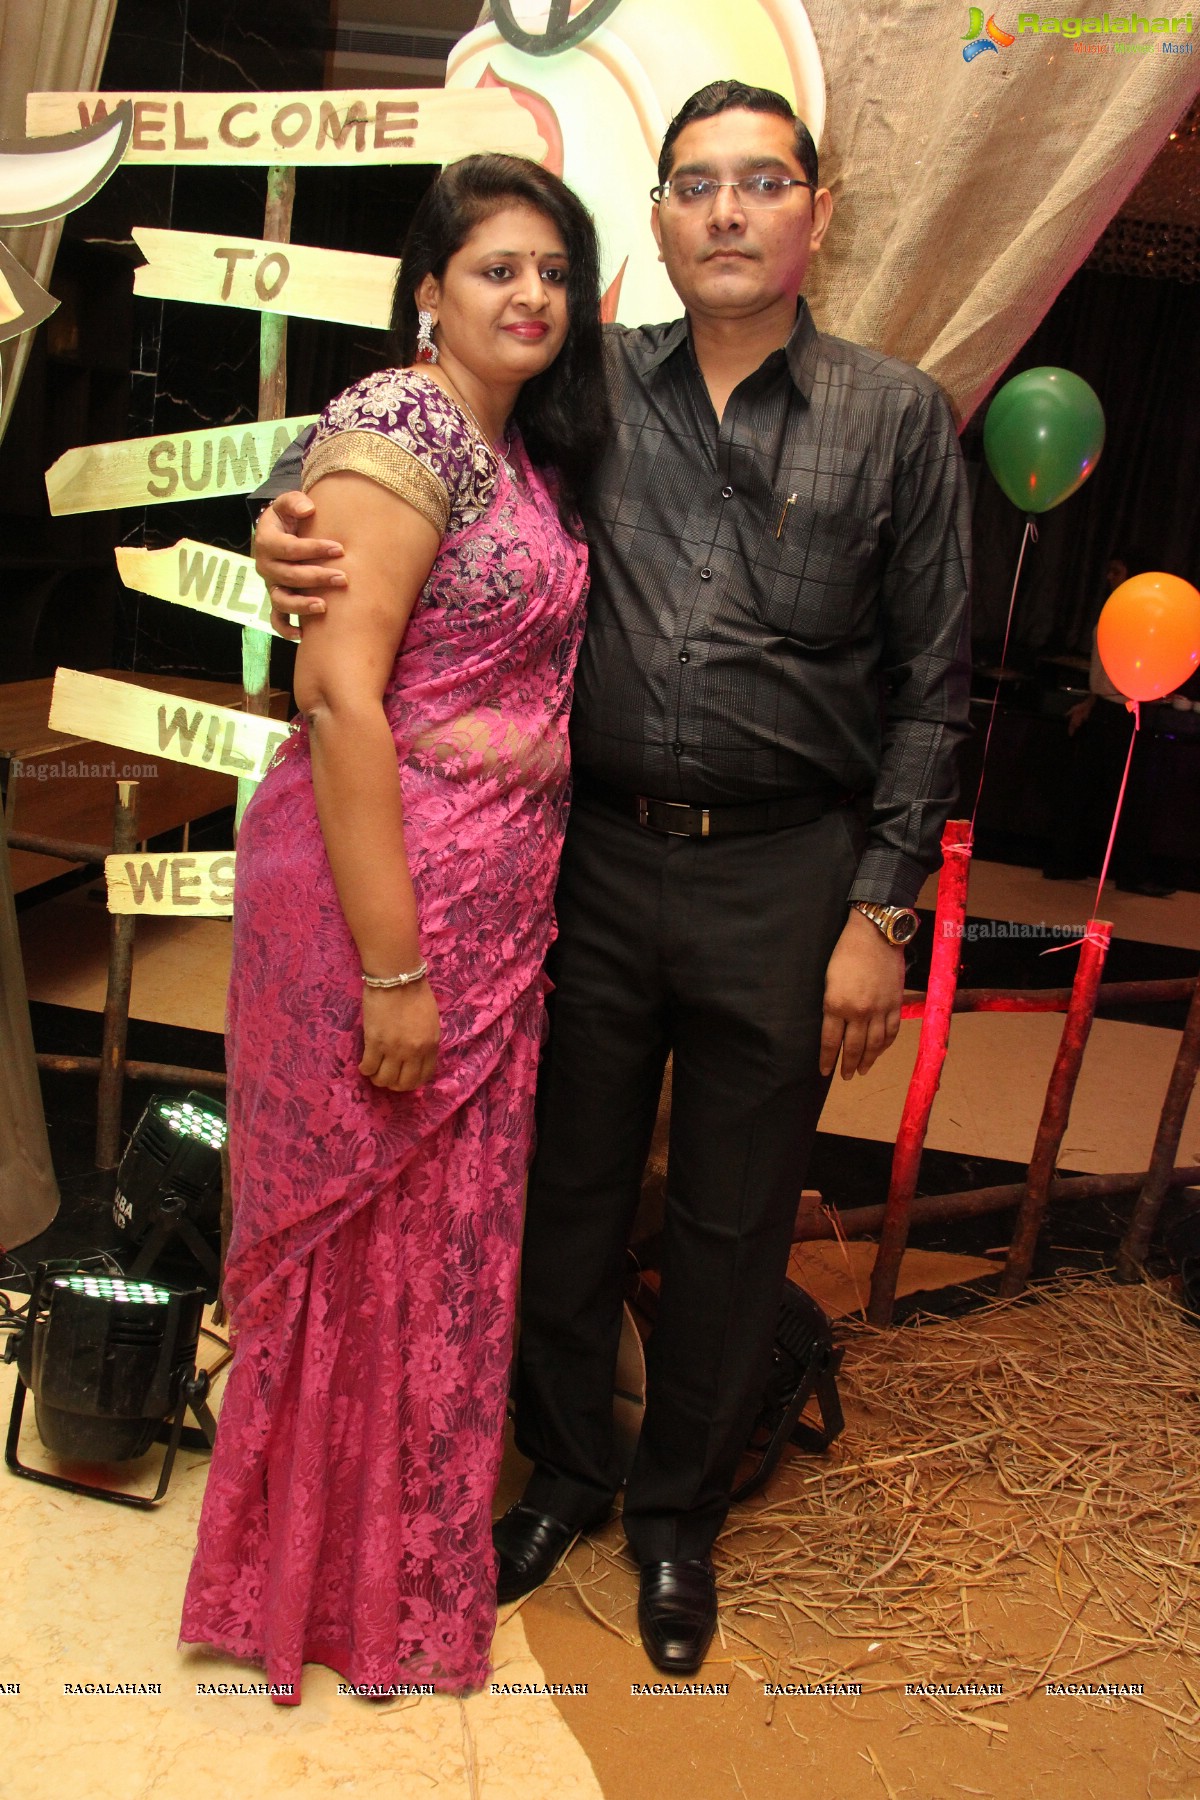 Sumay Birthday Party 2014 at Taj Vivanta, Hyderabad